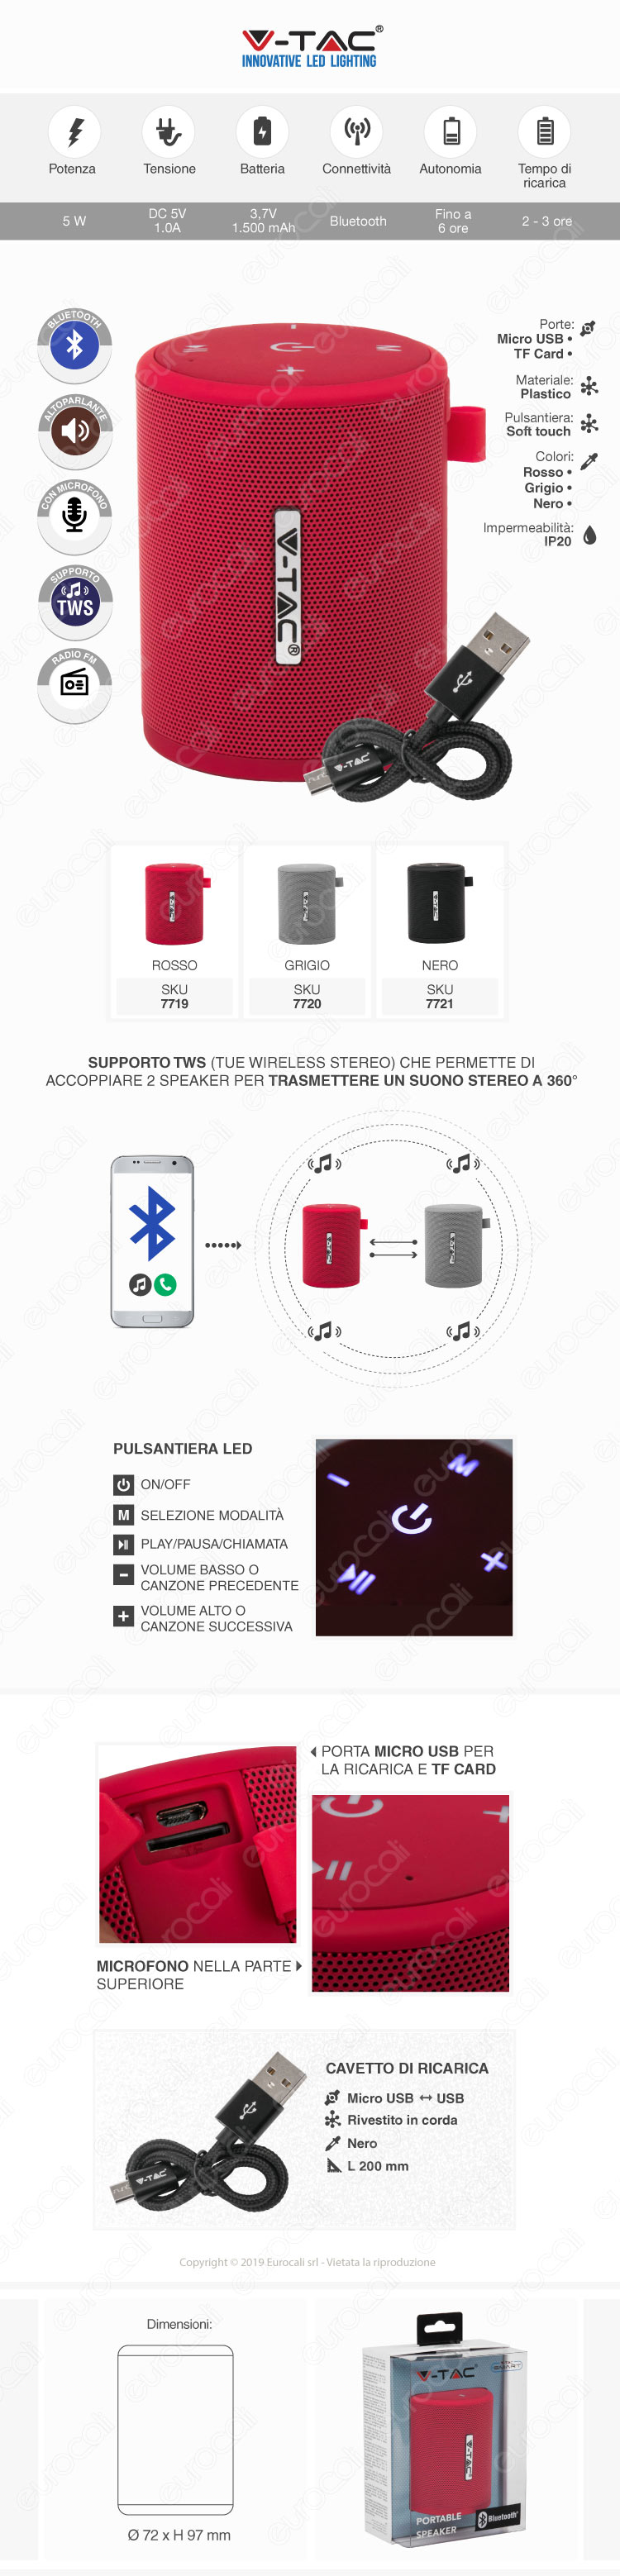 V-Tac VT-6244 Speaker Bluetooth Portatile 5W con Microfono Ingresso MicroSD e Radio FM